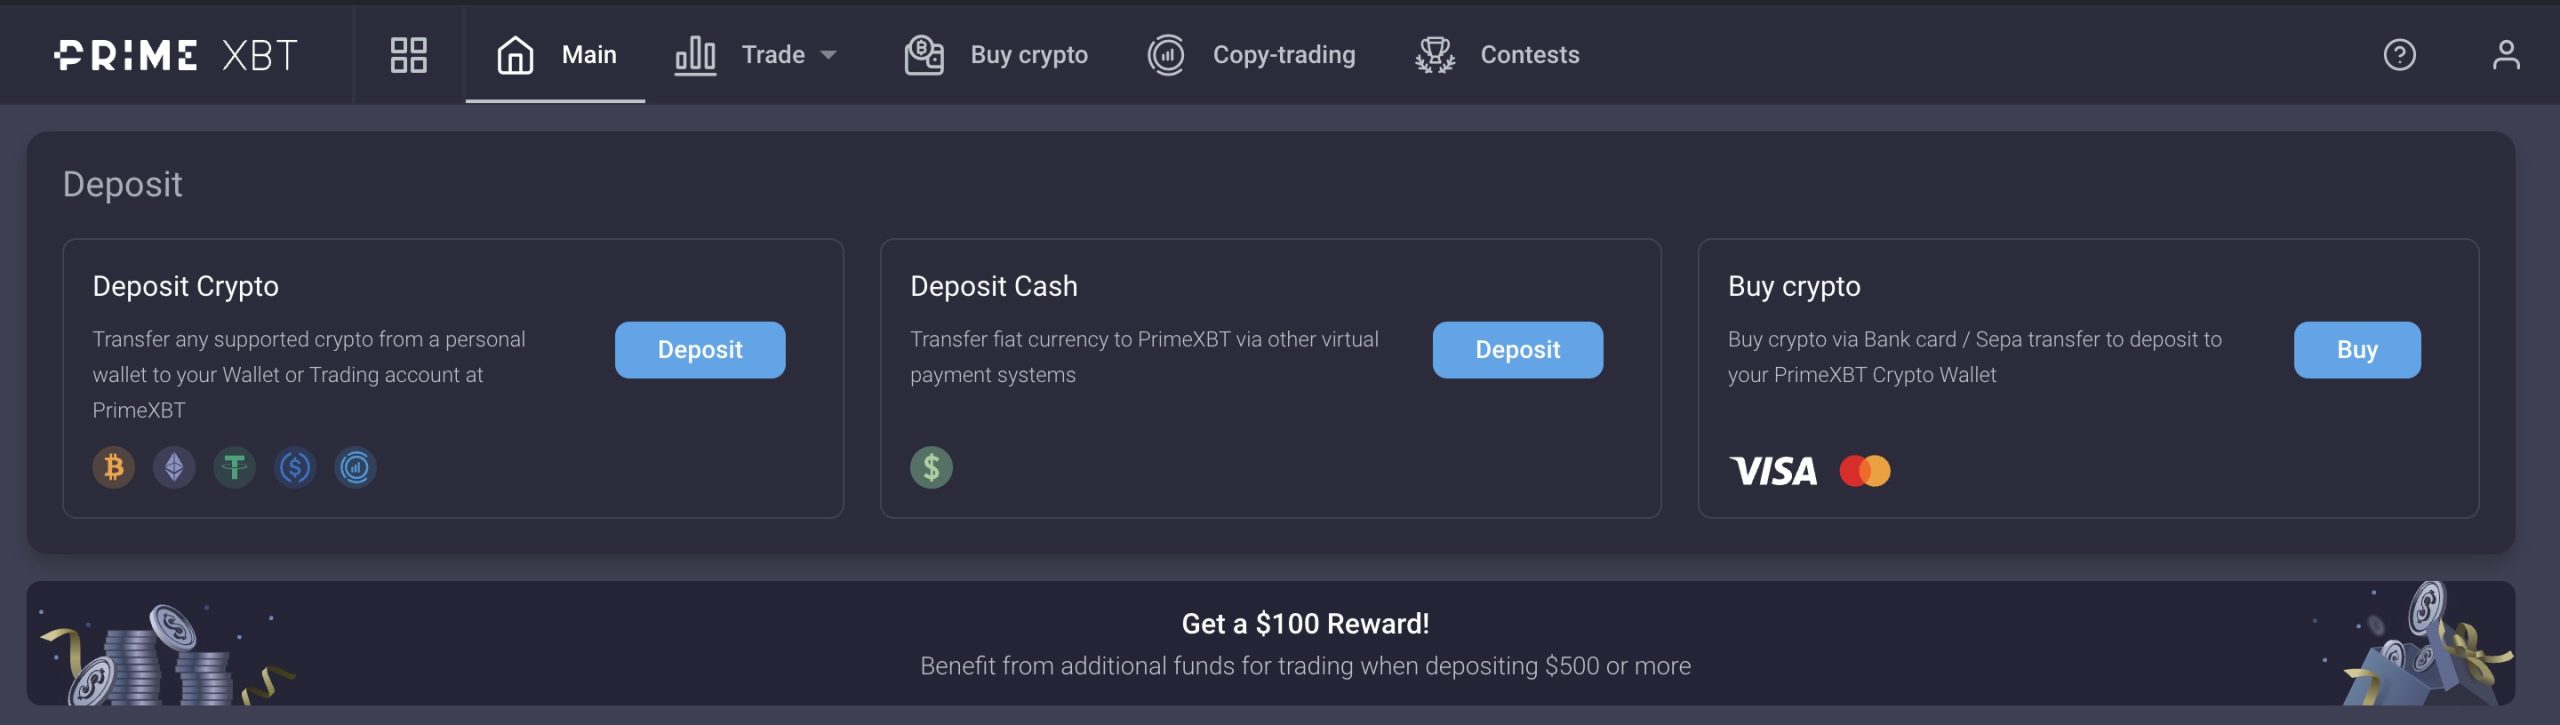 PrimeXBT Deposit Page